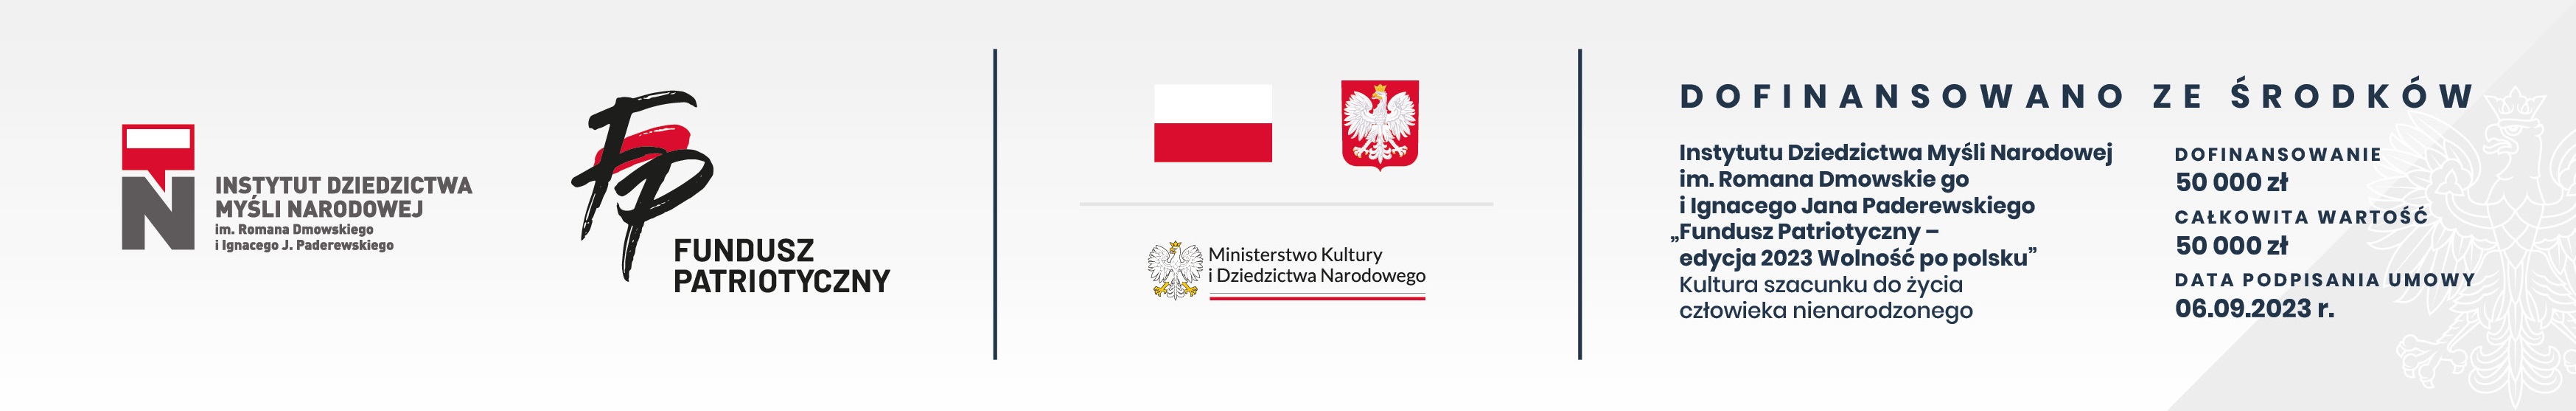 Fundusz Patriotyczny - edycja 2023 "Wolność po polsku"